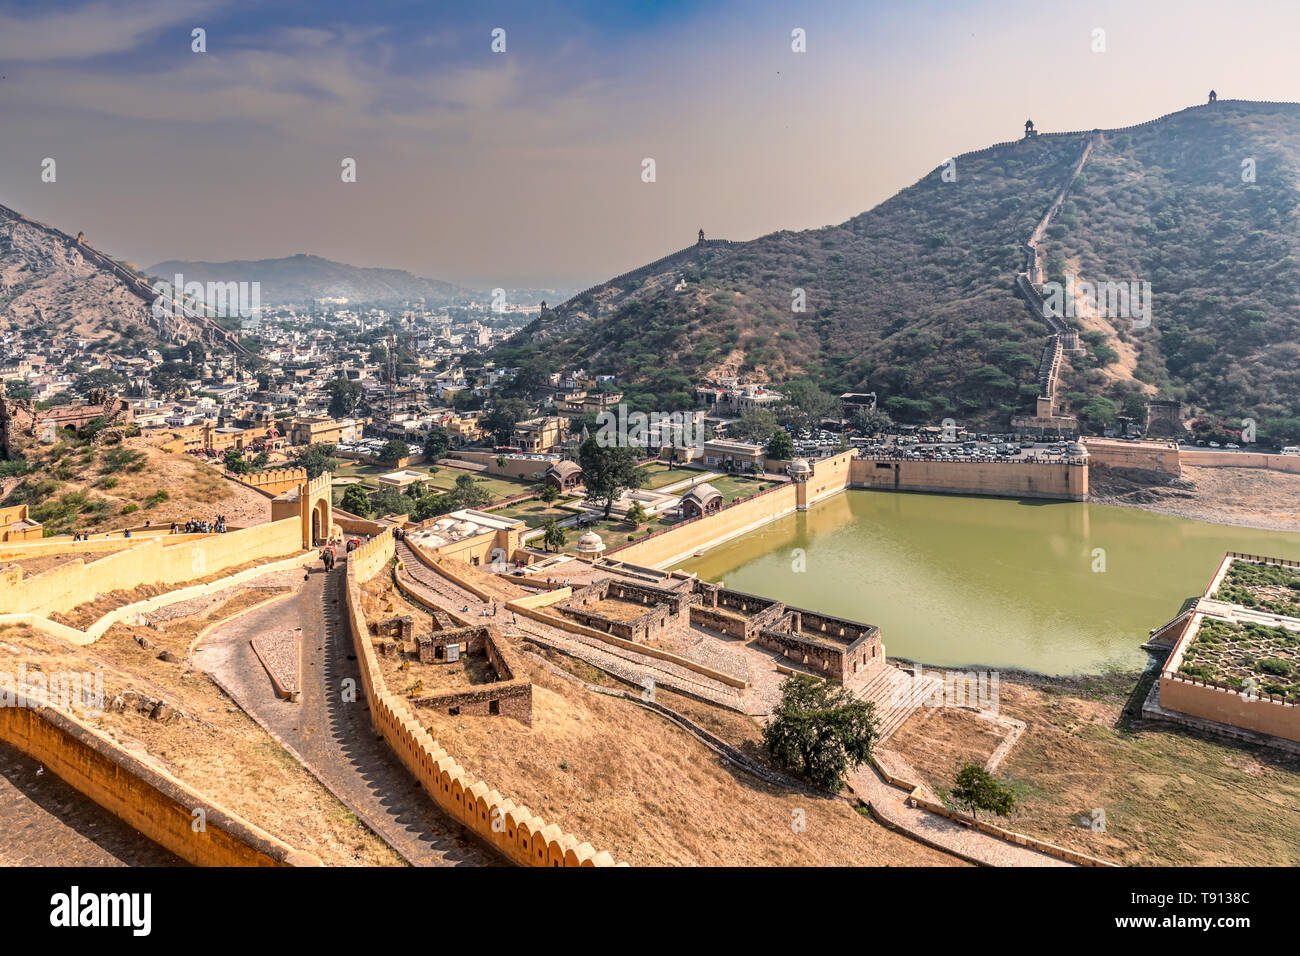 Vue depuis le Fort d'Amber situé dans l'Ambre, Rajasthan, Inde 11km de Jaipur, capitale du Rajasthan. C'est la principale attraction touristique de Jaip Banque D'Images